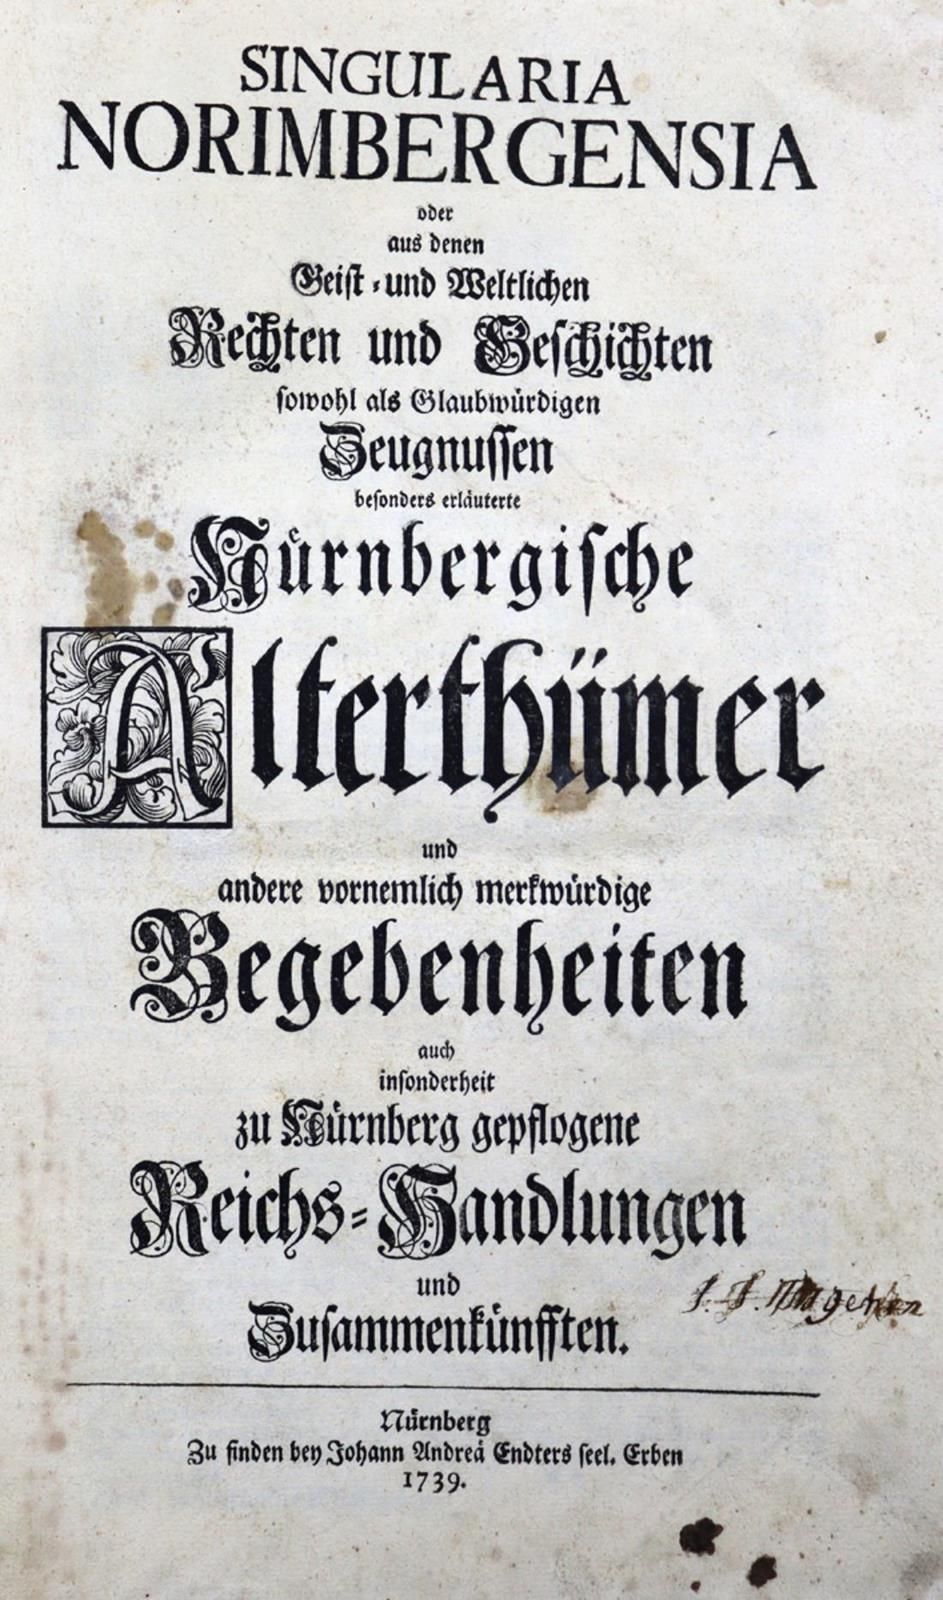 (Wölckern,L.C.). 在纽伦堡的历史上，有一种说法是 "纽伦堡帝国的历史"，即在1739年的时候，纽伦堡艺术大学出版了《纽伦堡帝国的历史》一书。纽伦&hellip;